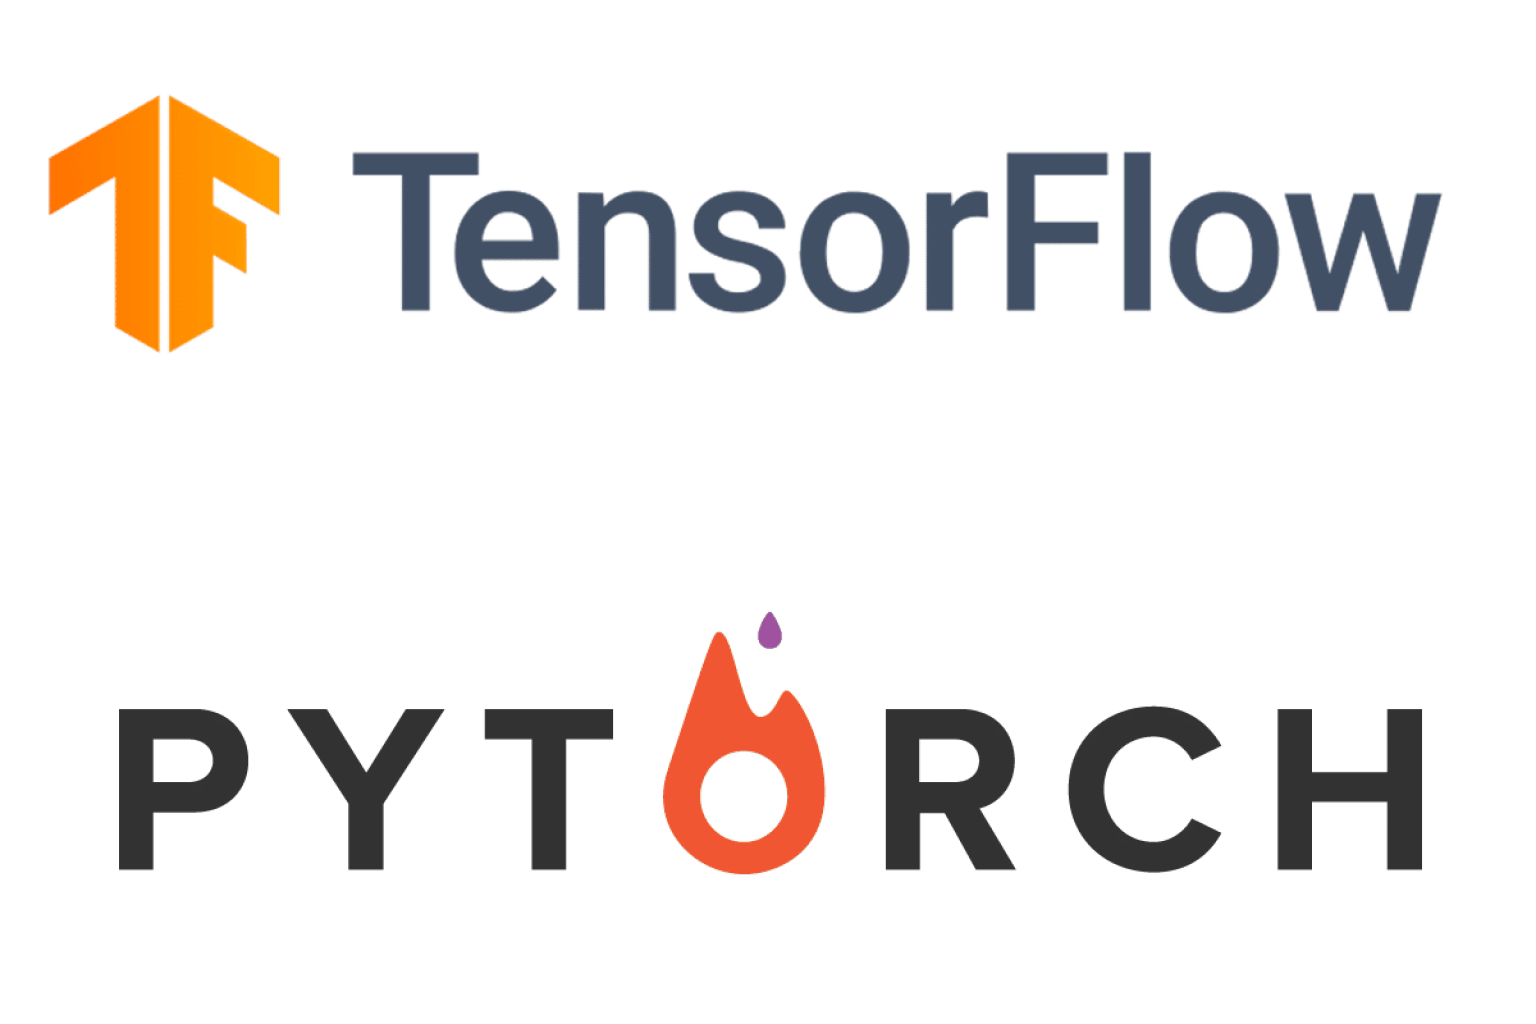 PyTorch と TensorFlow は、データ サイエンス コミュニティで使用されている最も人気のある深層学習フレームワークの 2 つです。PyTorch 2.0 の最近のリリースにより、多くの人が TensorFlow の優位性と競合できるかどうか疑問に思っています。このブログ投稿では、PyTorch を比較します。 2.0 と TensorFlow を比較して、PyTorch 2.0 が誰もが話しているゲーム チェンジャーであるかどうかを確認してください。